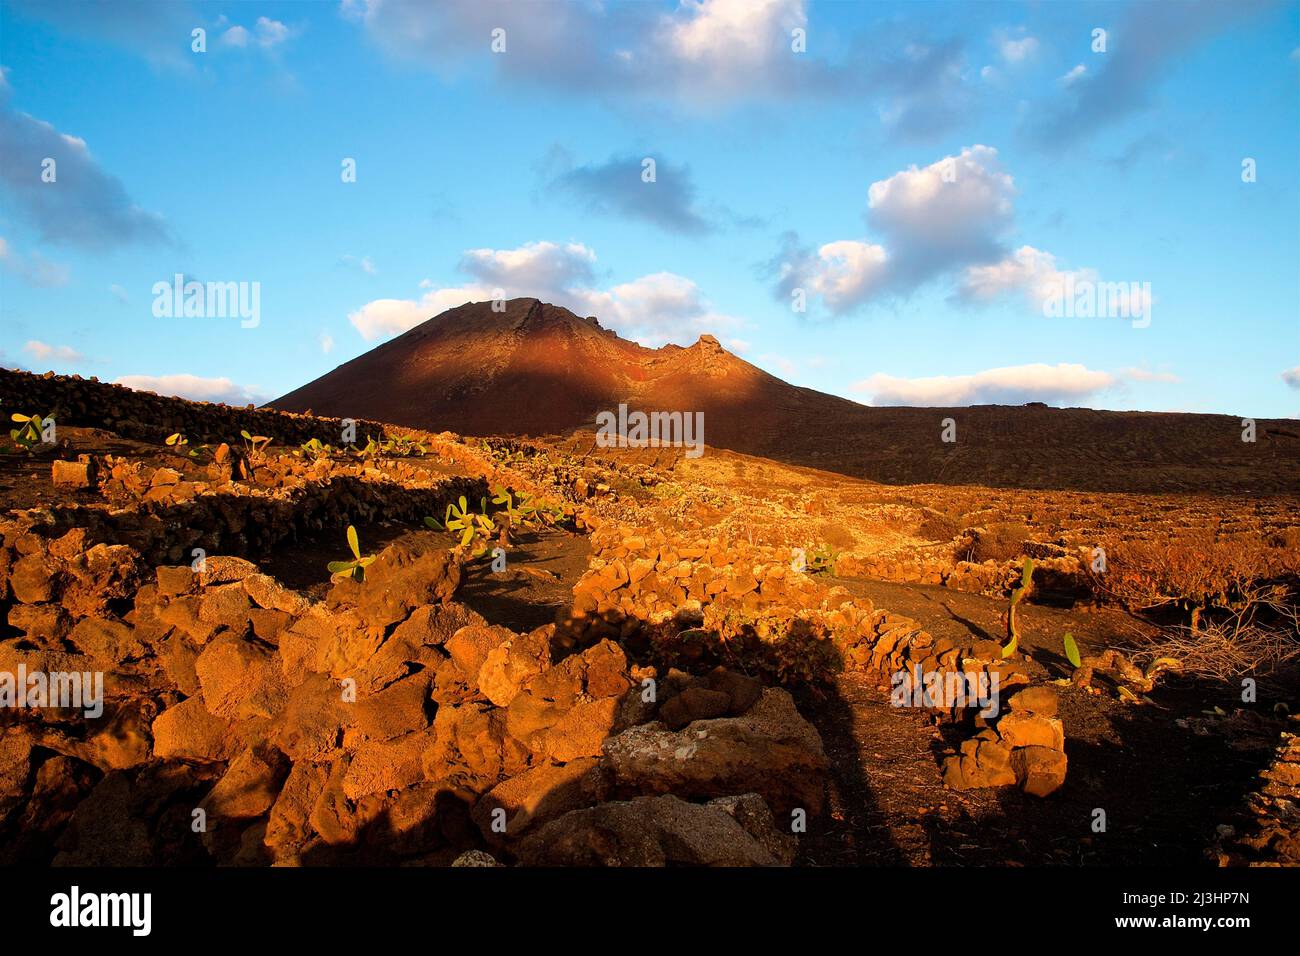 Isole Canarie, Lanzarote, isola vulcanica, paesaggio vulcanico a nord nella luce del mattino, pareti di roccia lavica, colline vulcaniche al mattino, azzurro cielo e chiaro con nuvole grigie e bianche Foto Stock